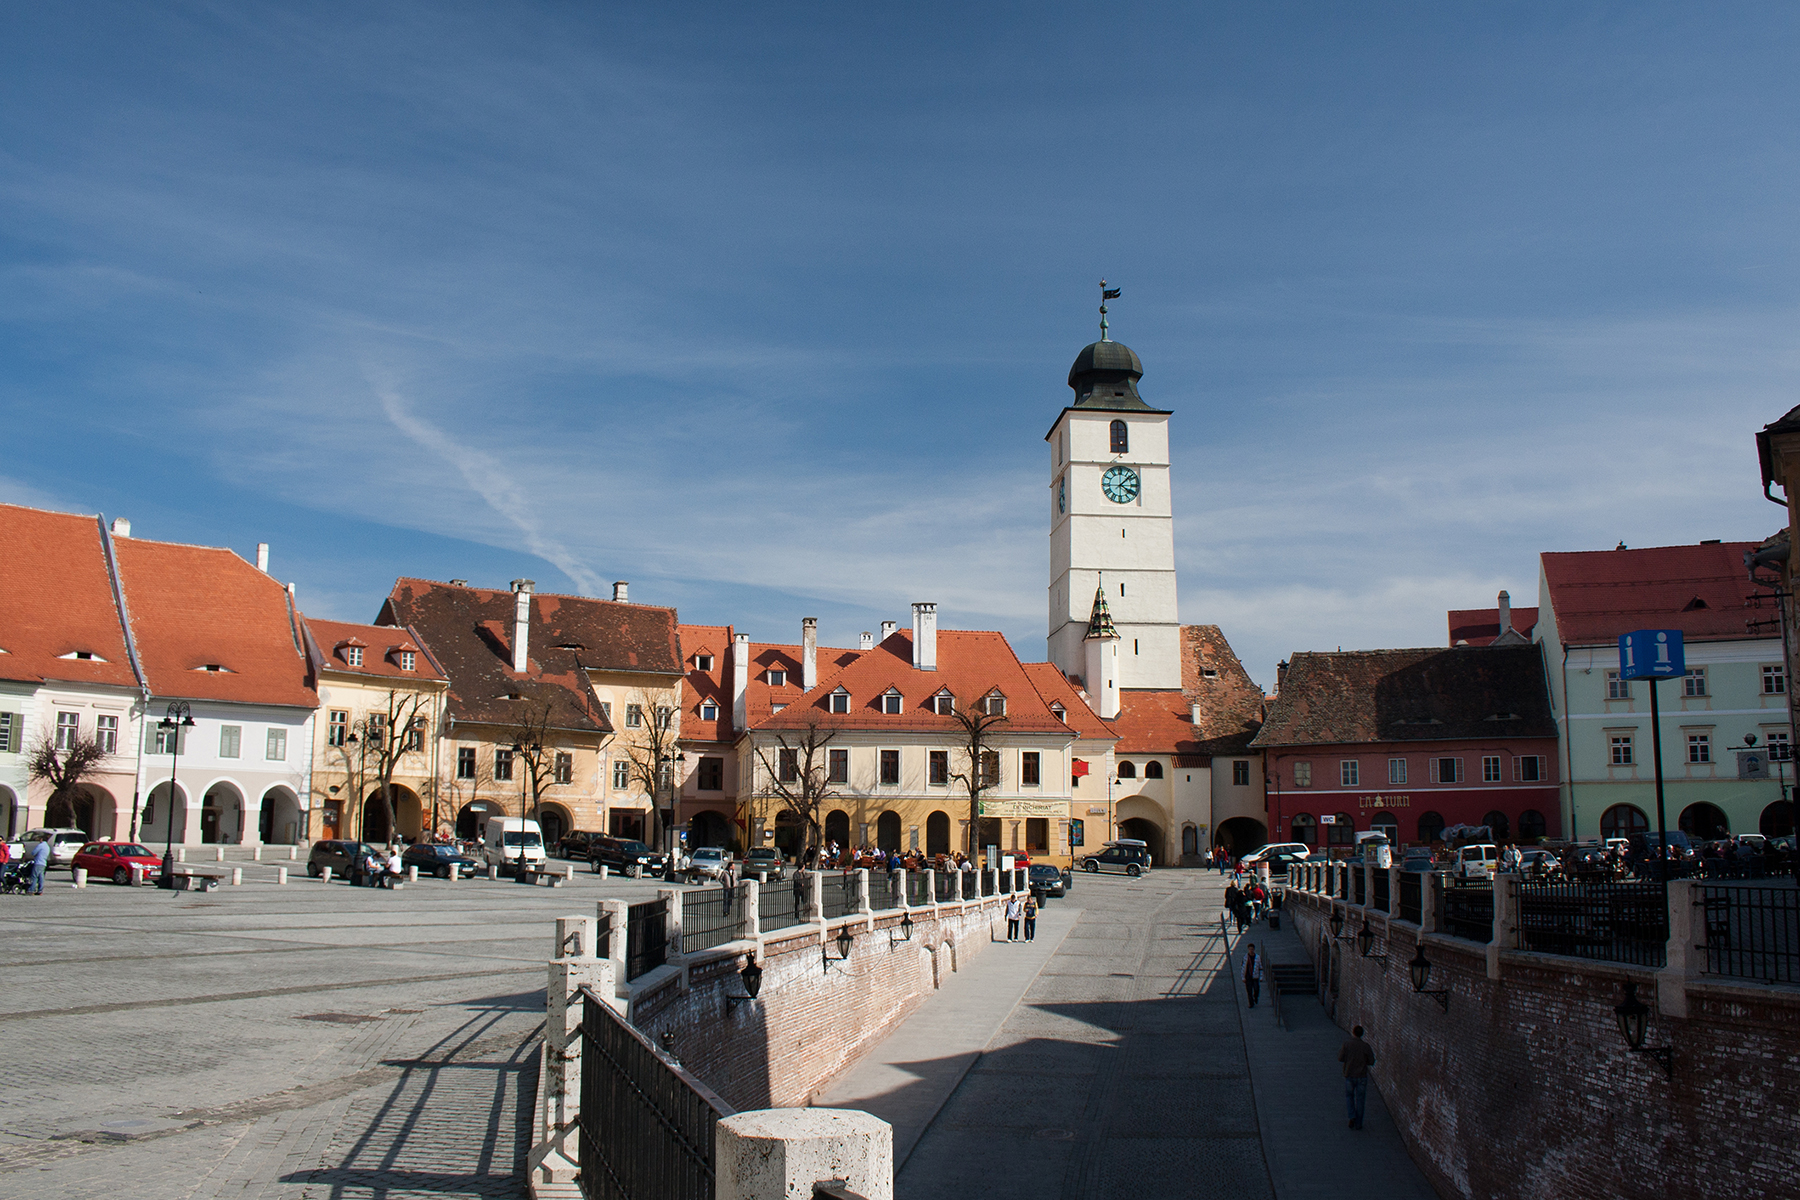 Povestea Turnului Sfatului din Sibiu